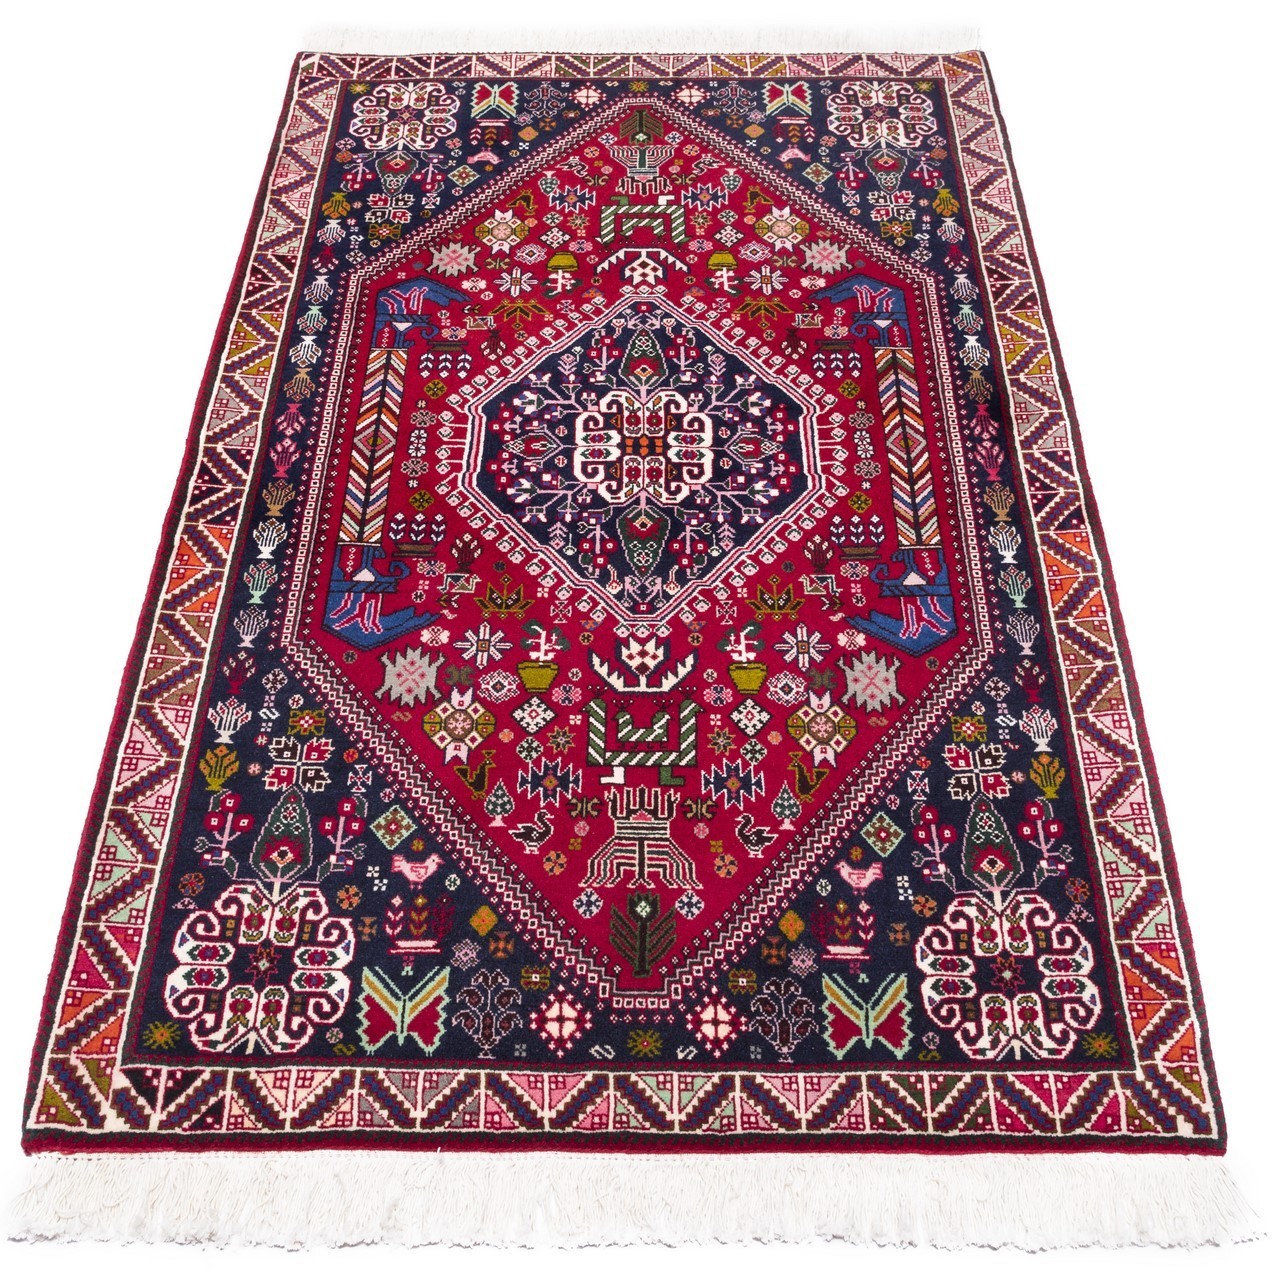 handgeknüpfter persischer Teppich. Ziffer 162070